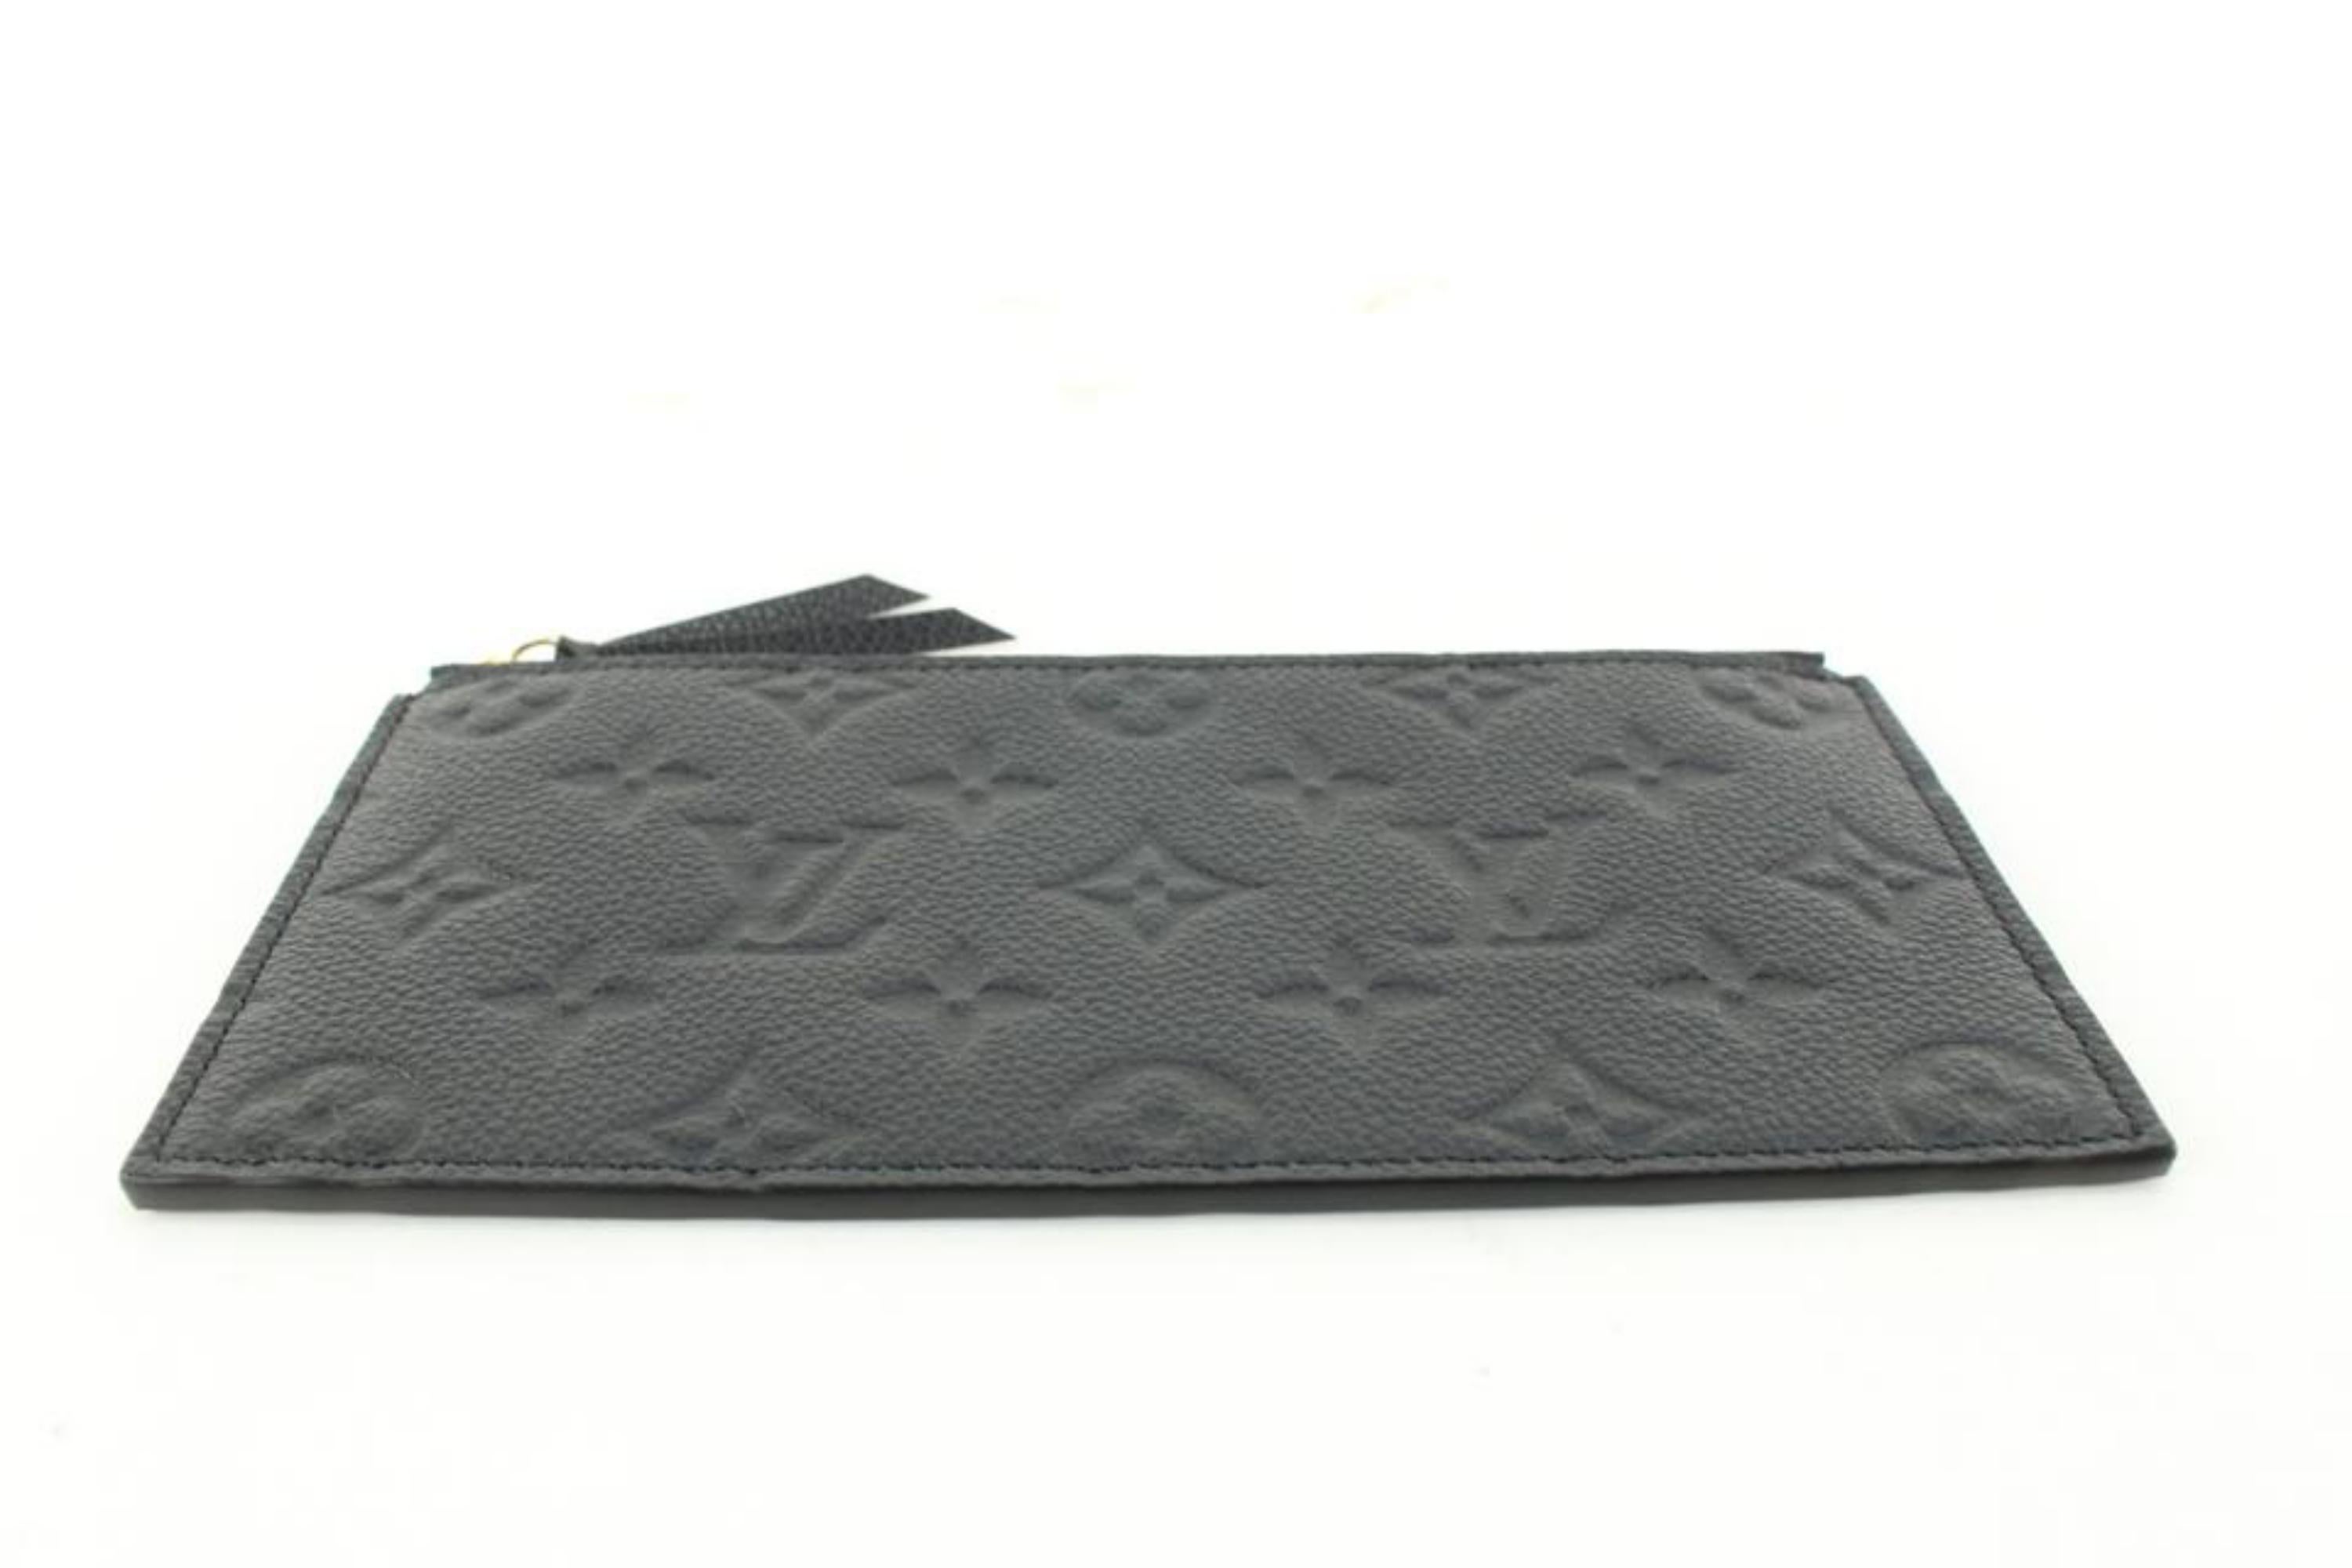 Louis Vuitton Black Leather Monogram Empreinte Felicie Zip Pouch Insert 6lk712s 5